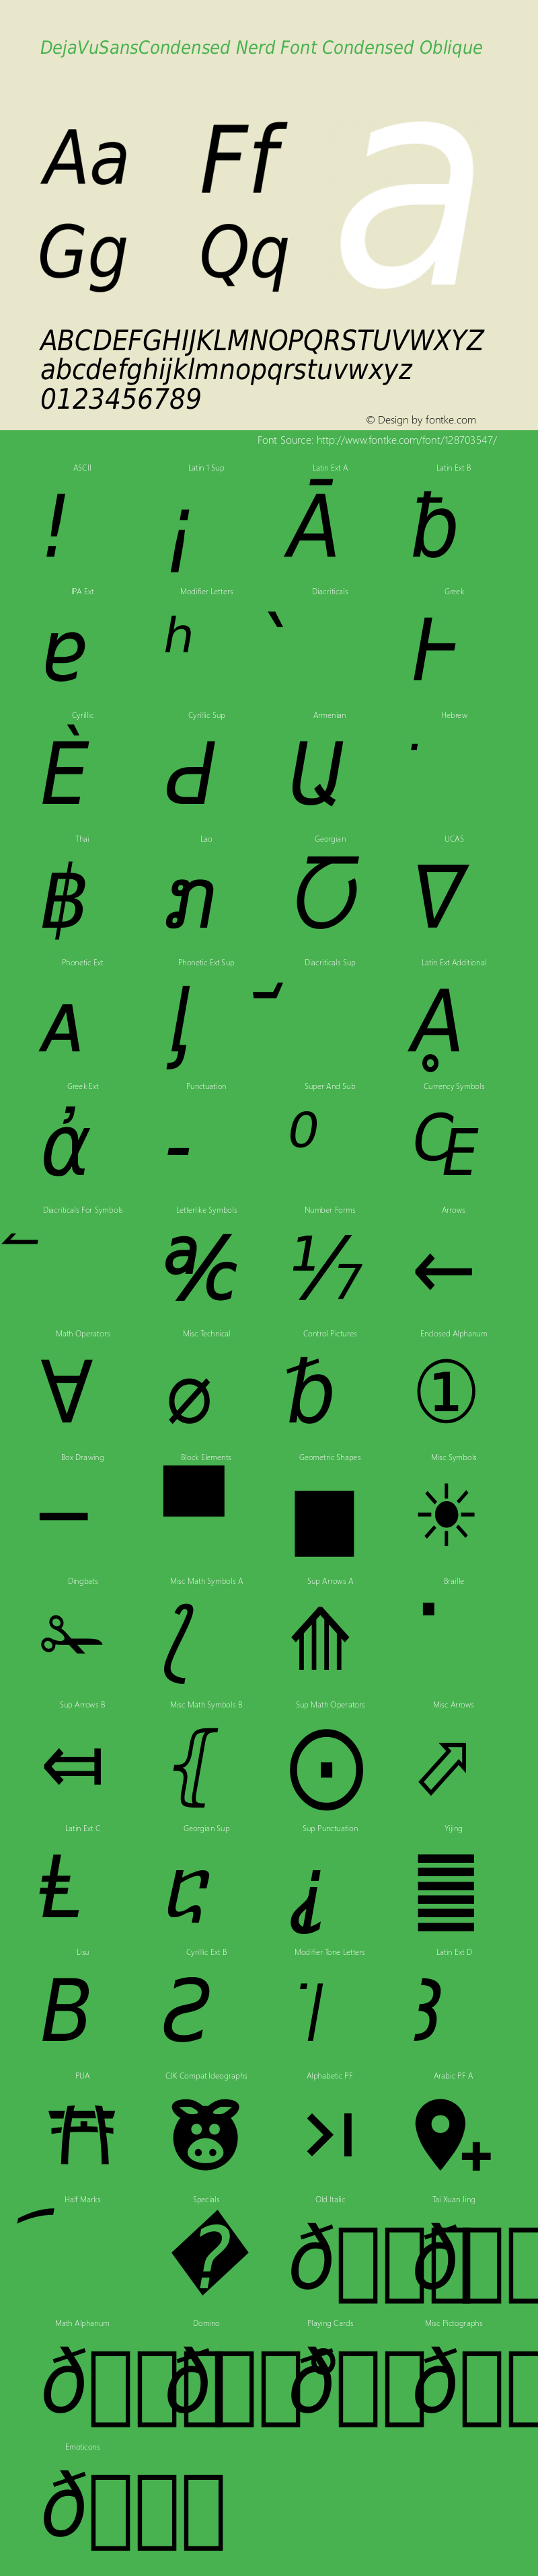 DejaVu Sans Condensed Oblique Nerd Font Complete Version 2.37 Font Sample